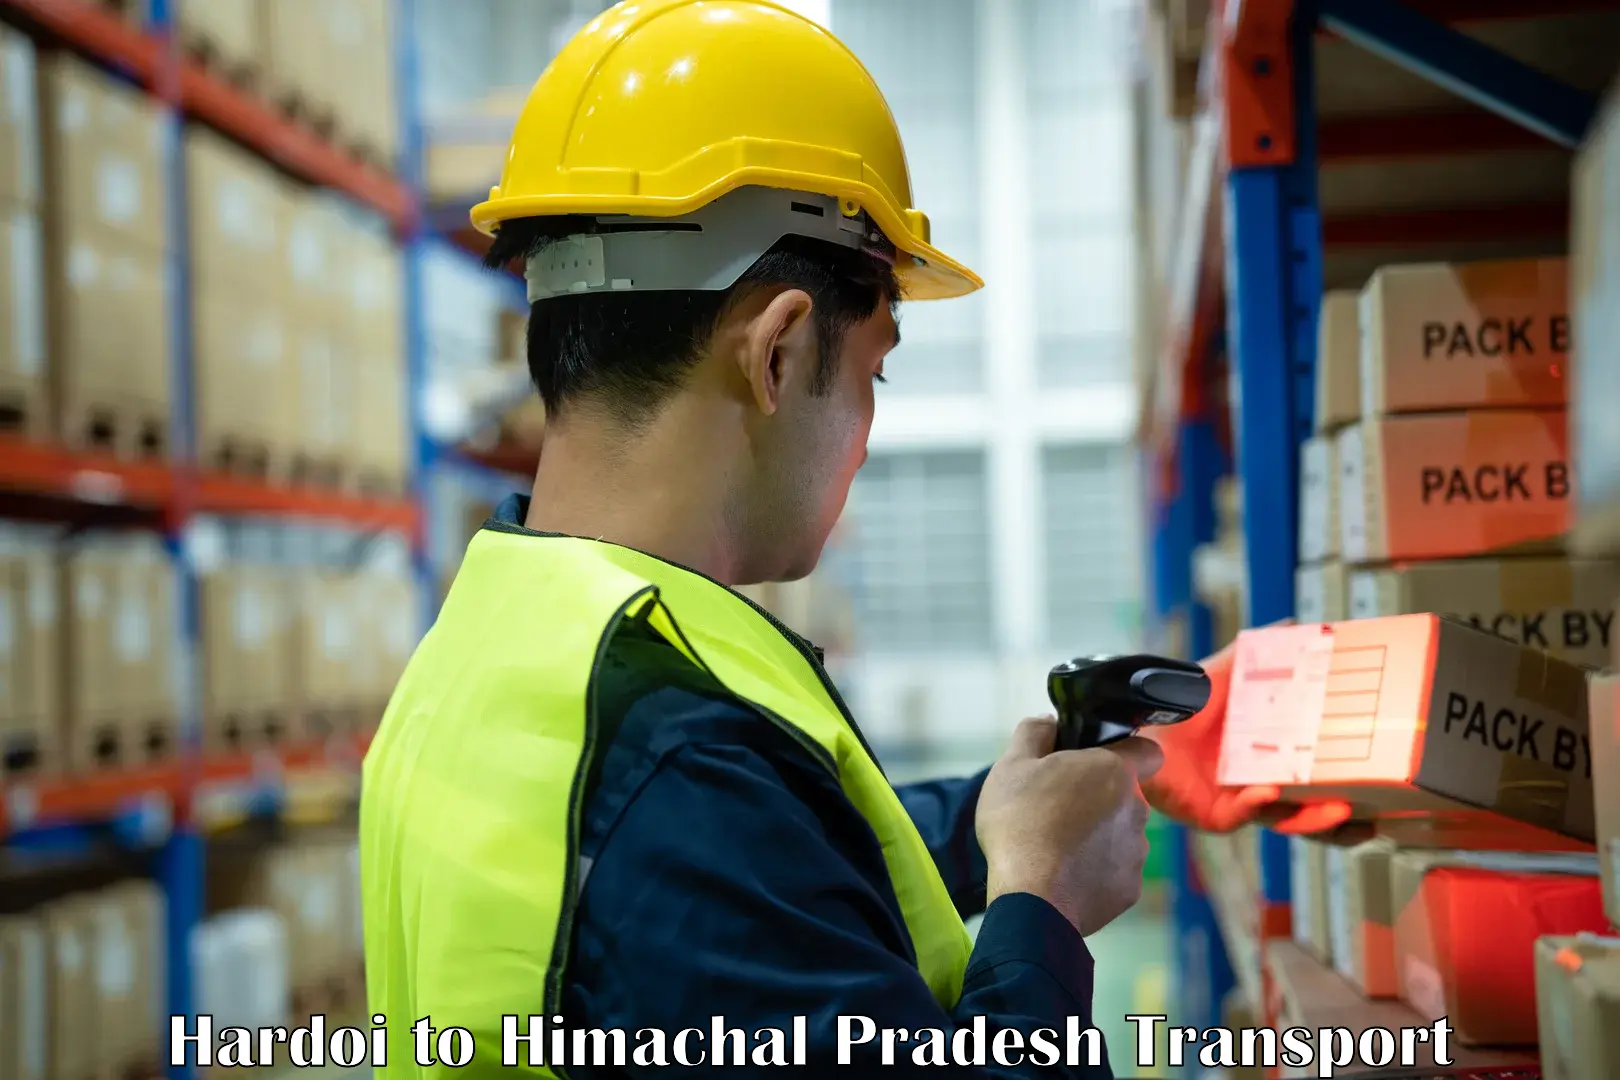 Package delivery services Hardoi to Una Himachal Pradesh